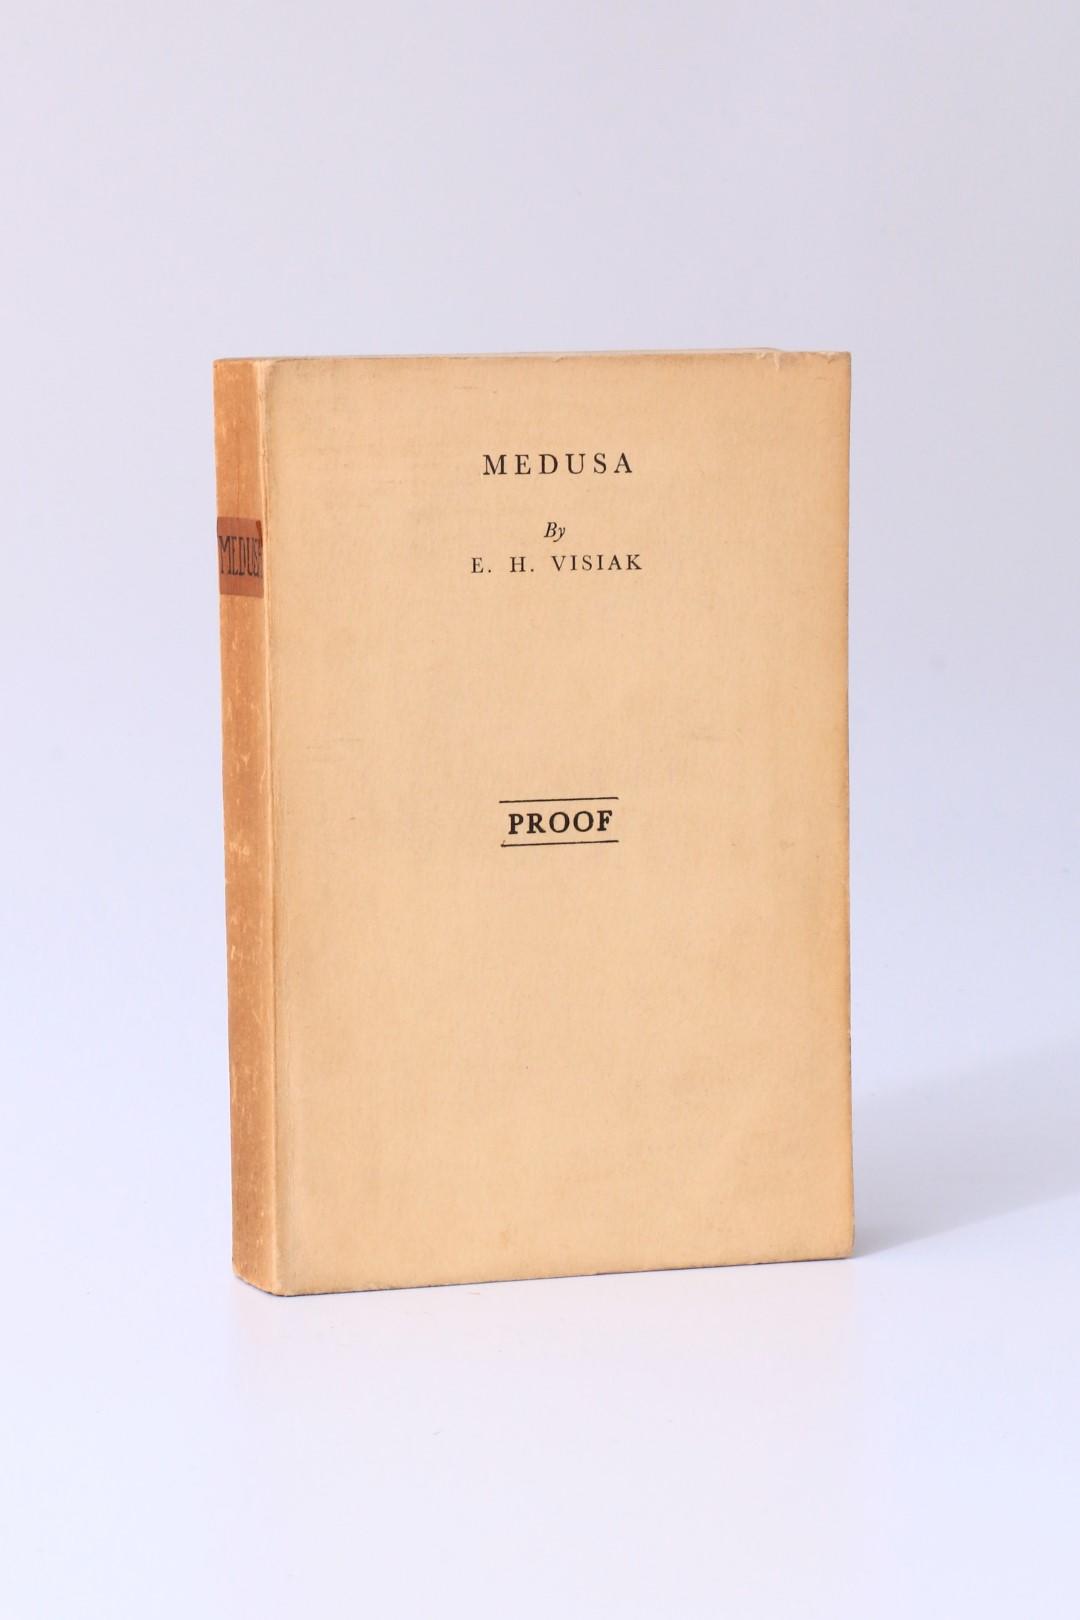 E.H. Visiak - Medusa - Gollancz, 1929, Proof. Signed